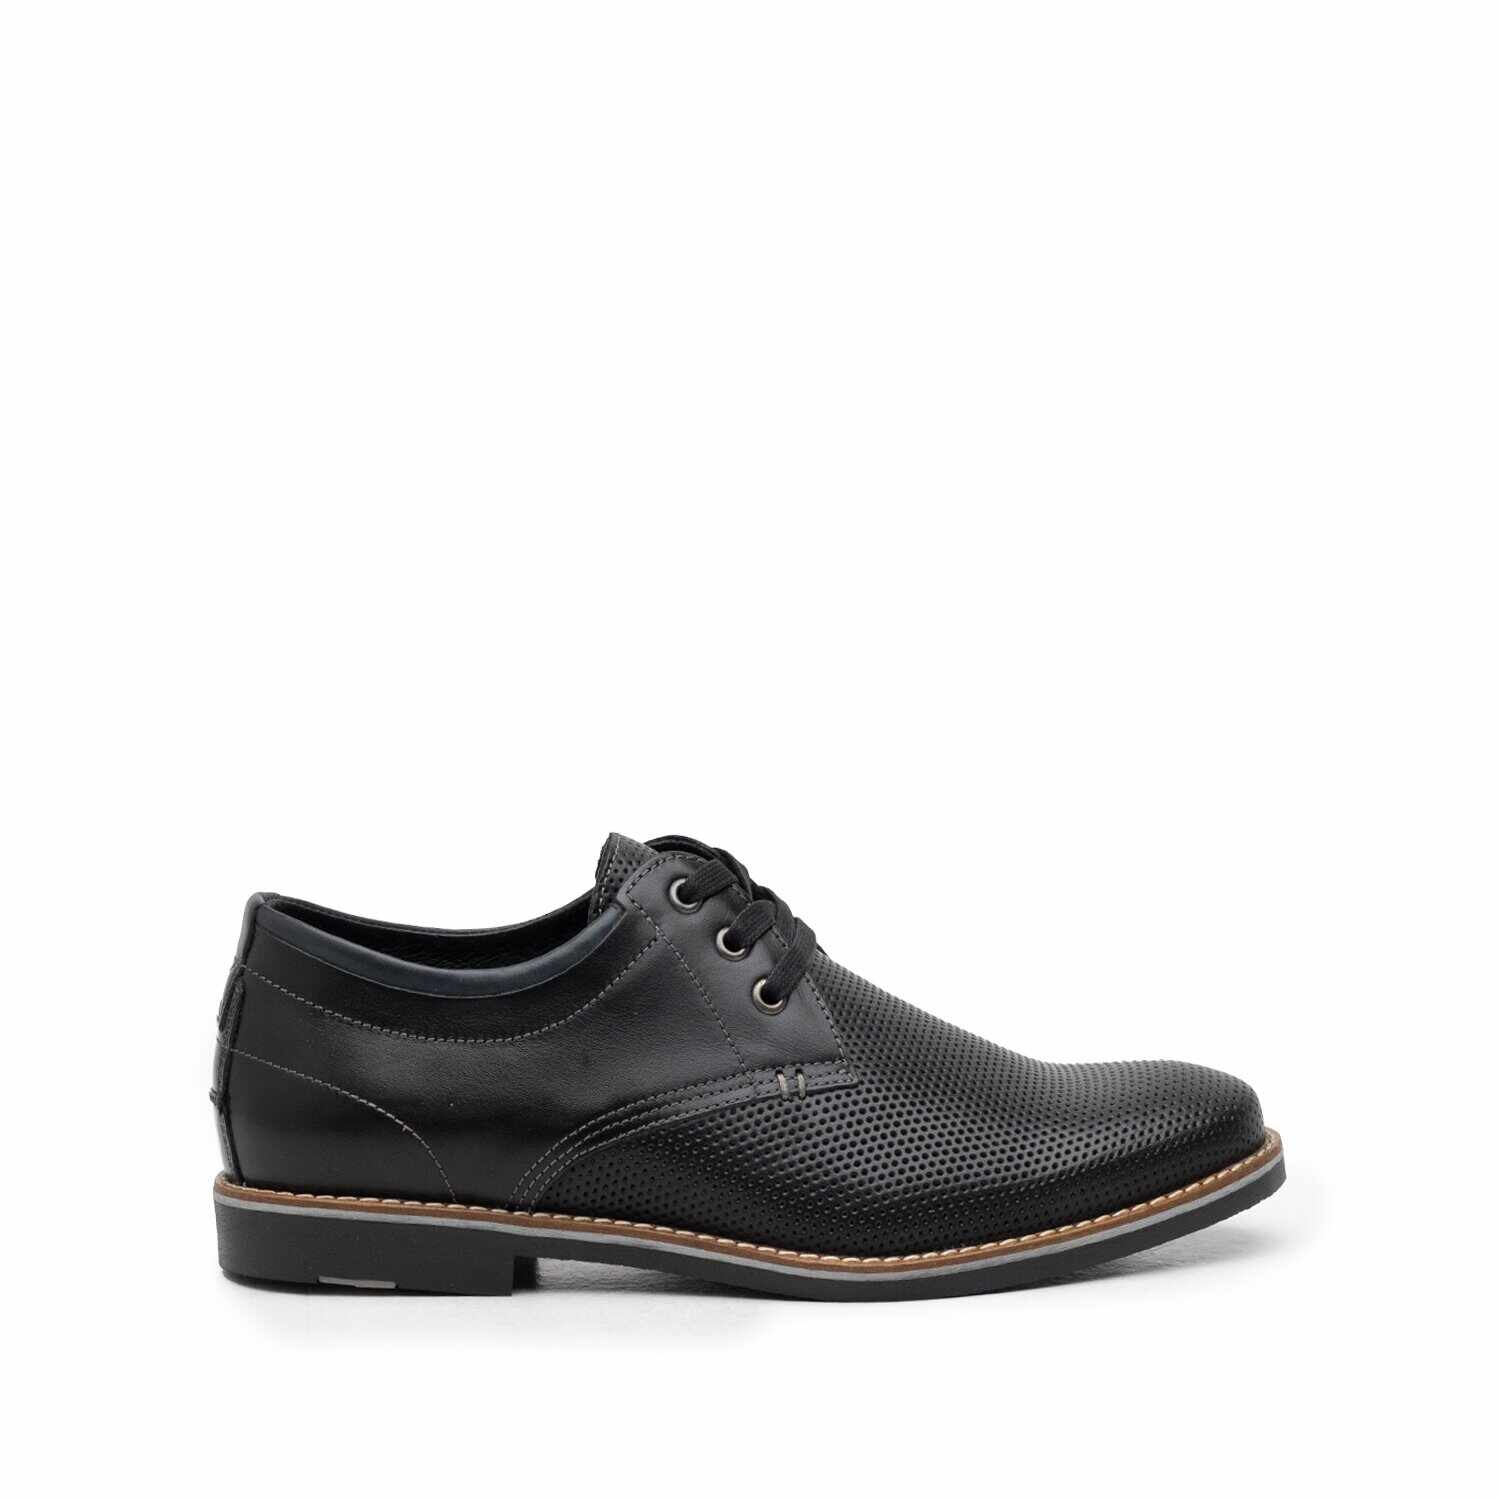 Pantofi casual barbati din piele naturala, Leofex - 787 negru box